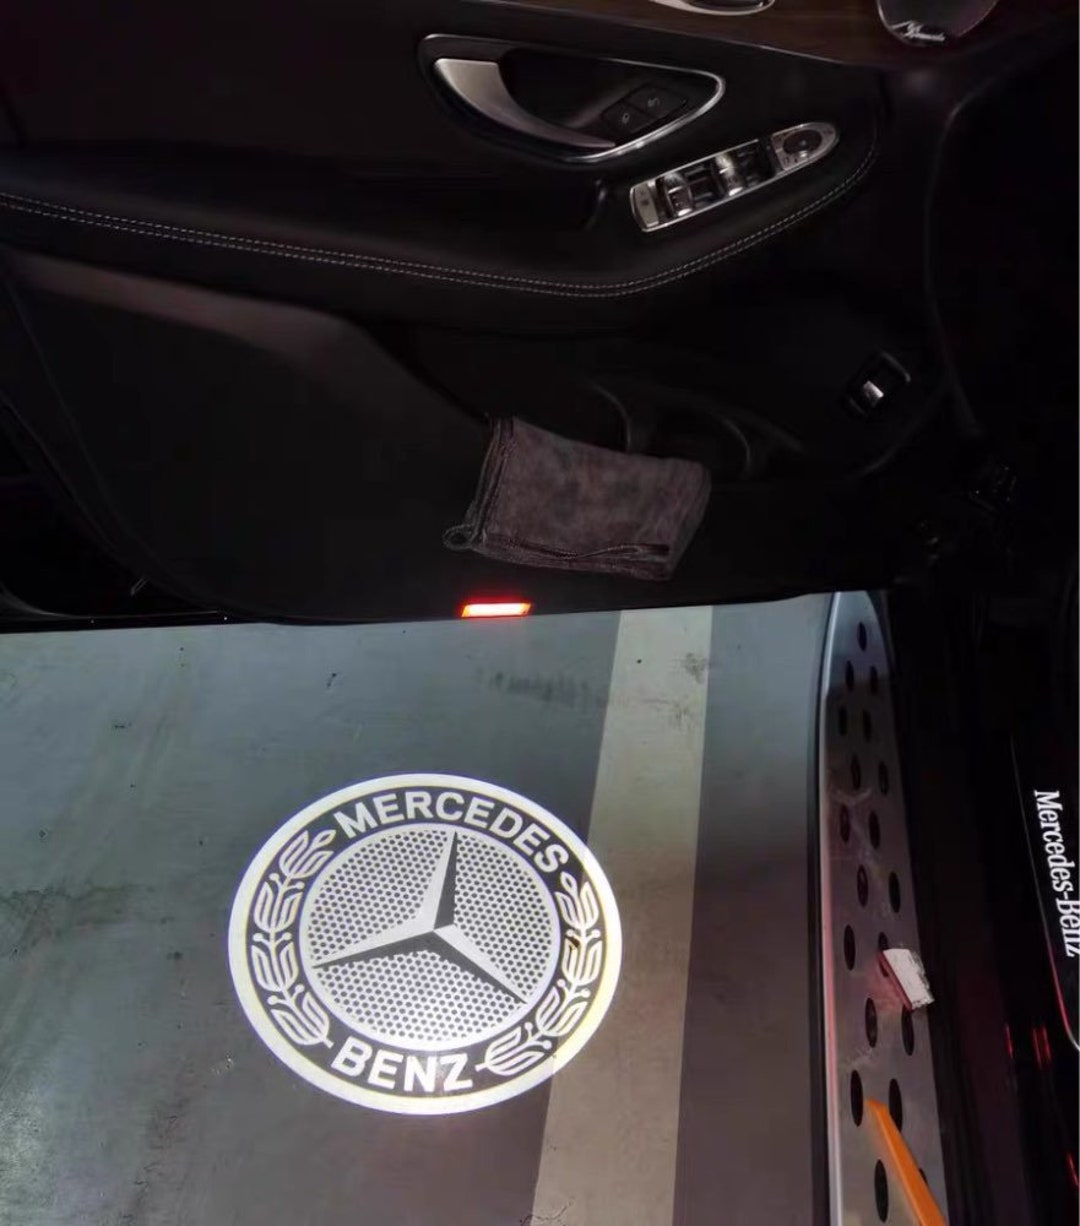 2X Auto-LED-Tür-Lichtprojektoren Logo Pfütze mit freundlicher Genehmigung  Für Mercedes Benz C CLA CLS E-Klasse - .de